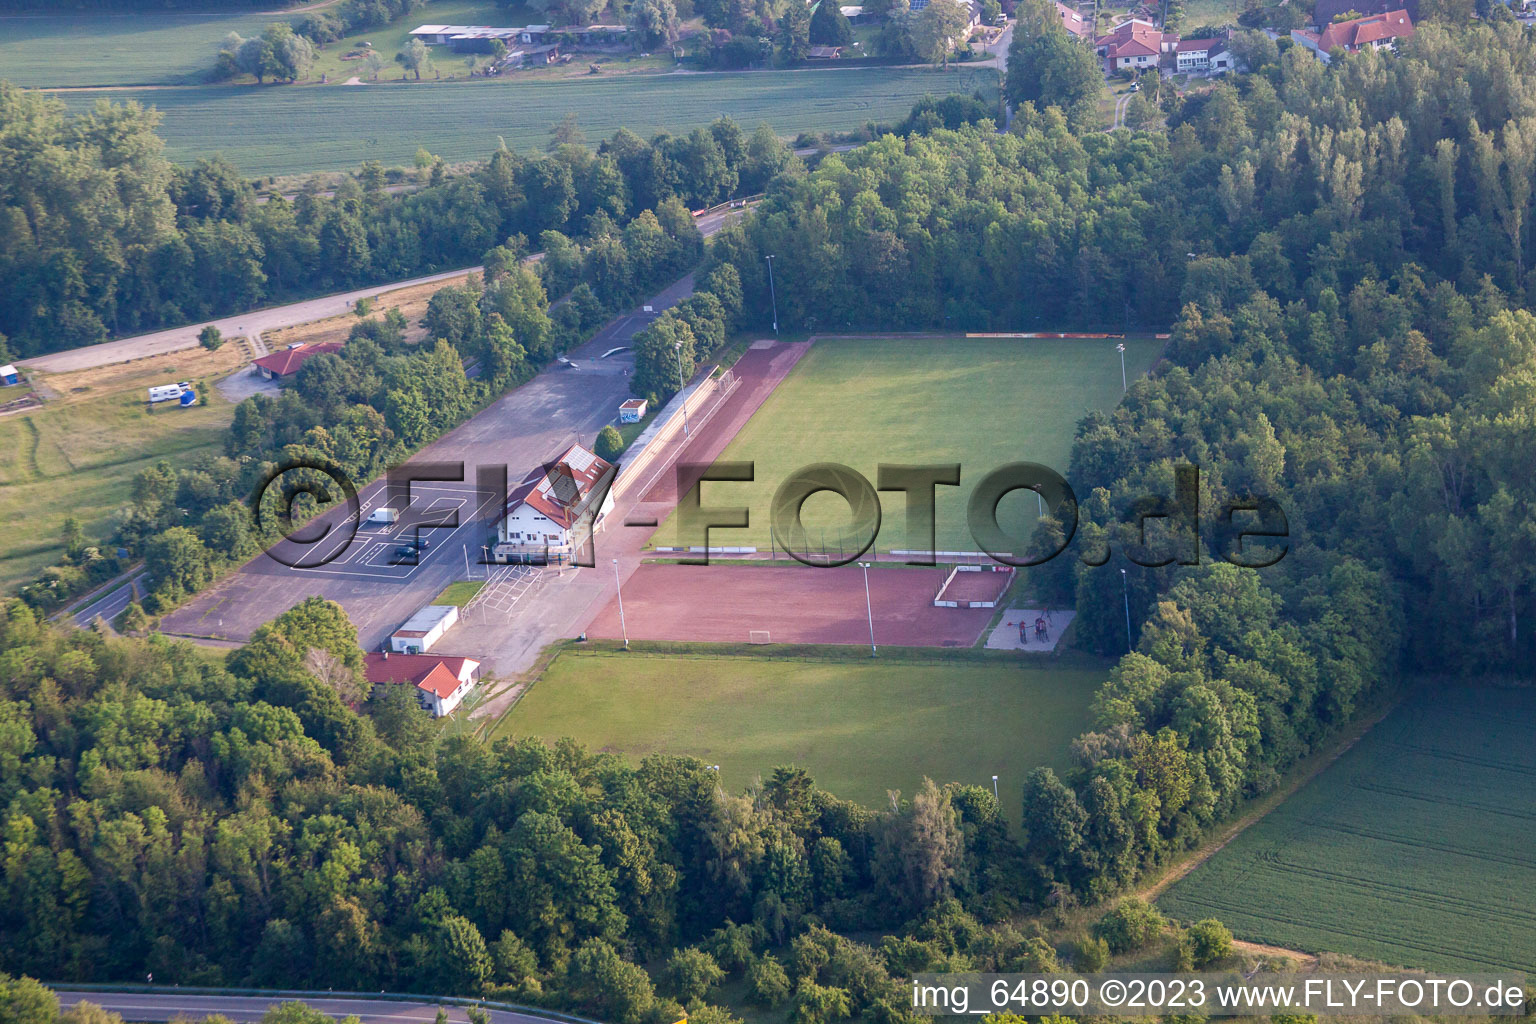 Vue aérienne de Terrain de jeux VFR à le quartier Rheinsheim in Philippsburg dans le département Bade-Wurtemberg, Allemagne